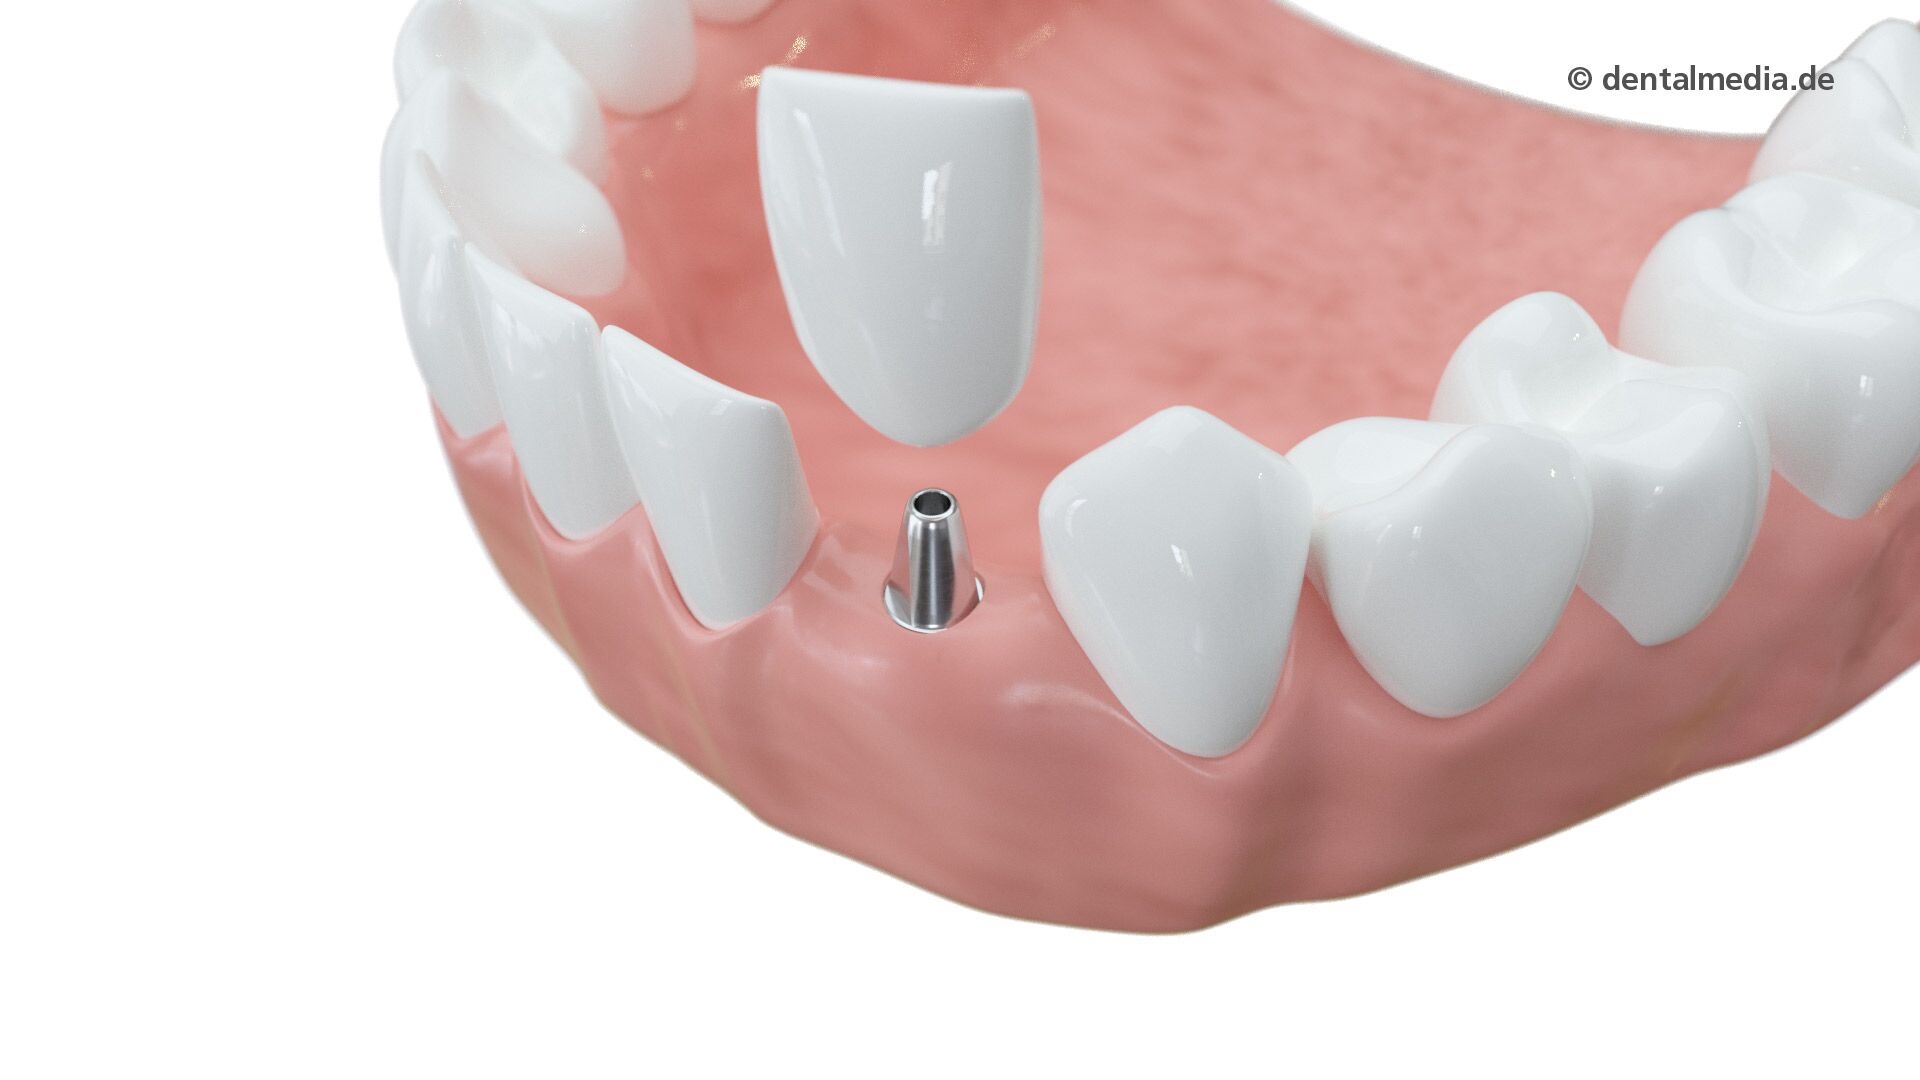 schaltlücke-mit-implantat-und-zahn-5db45af5